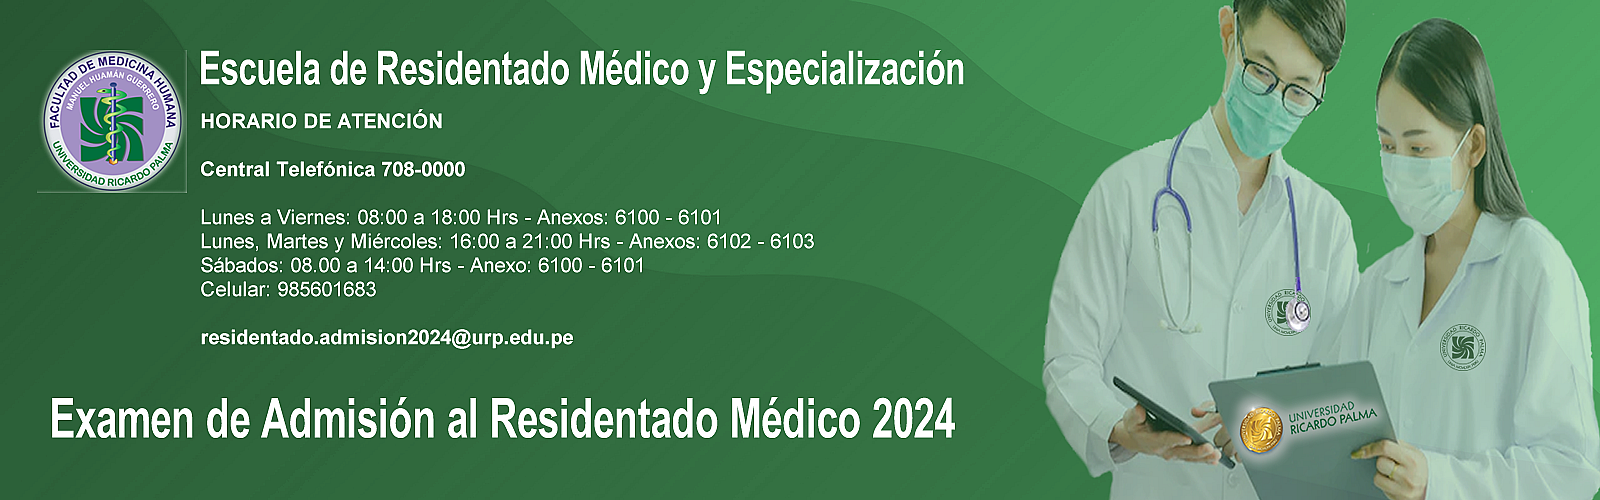 Examen de Admisión al Residentado Médico 2024